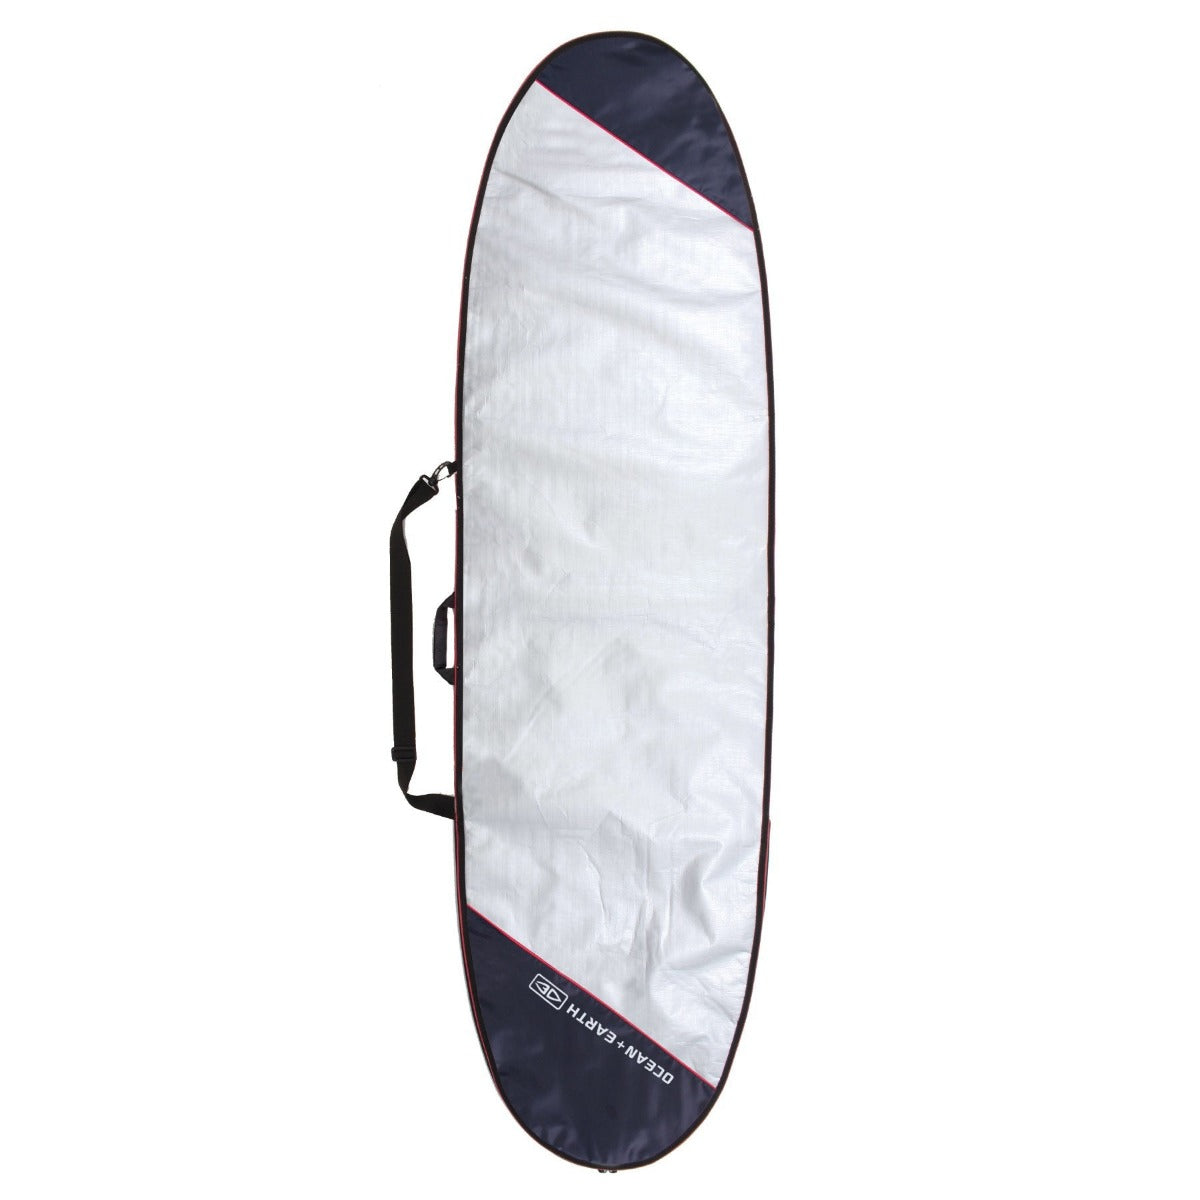 Barry-Longboard-Surfboard-bag